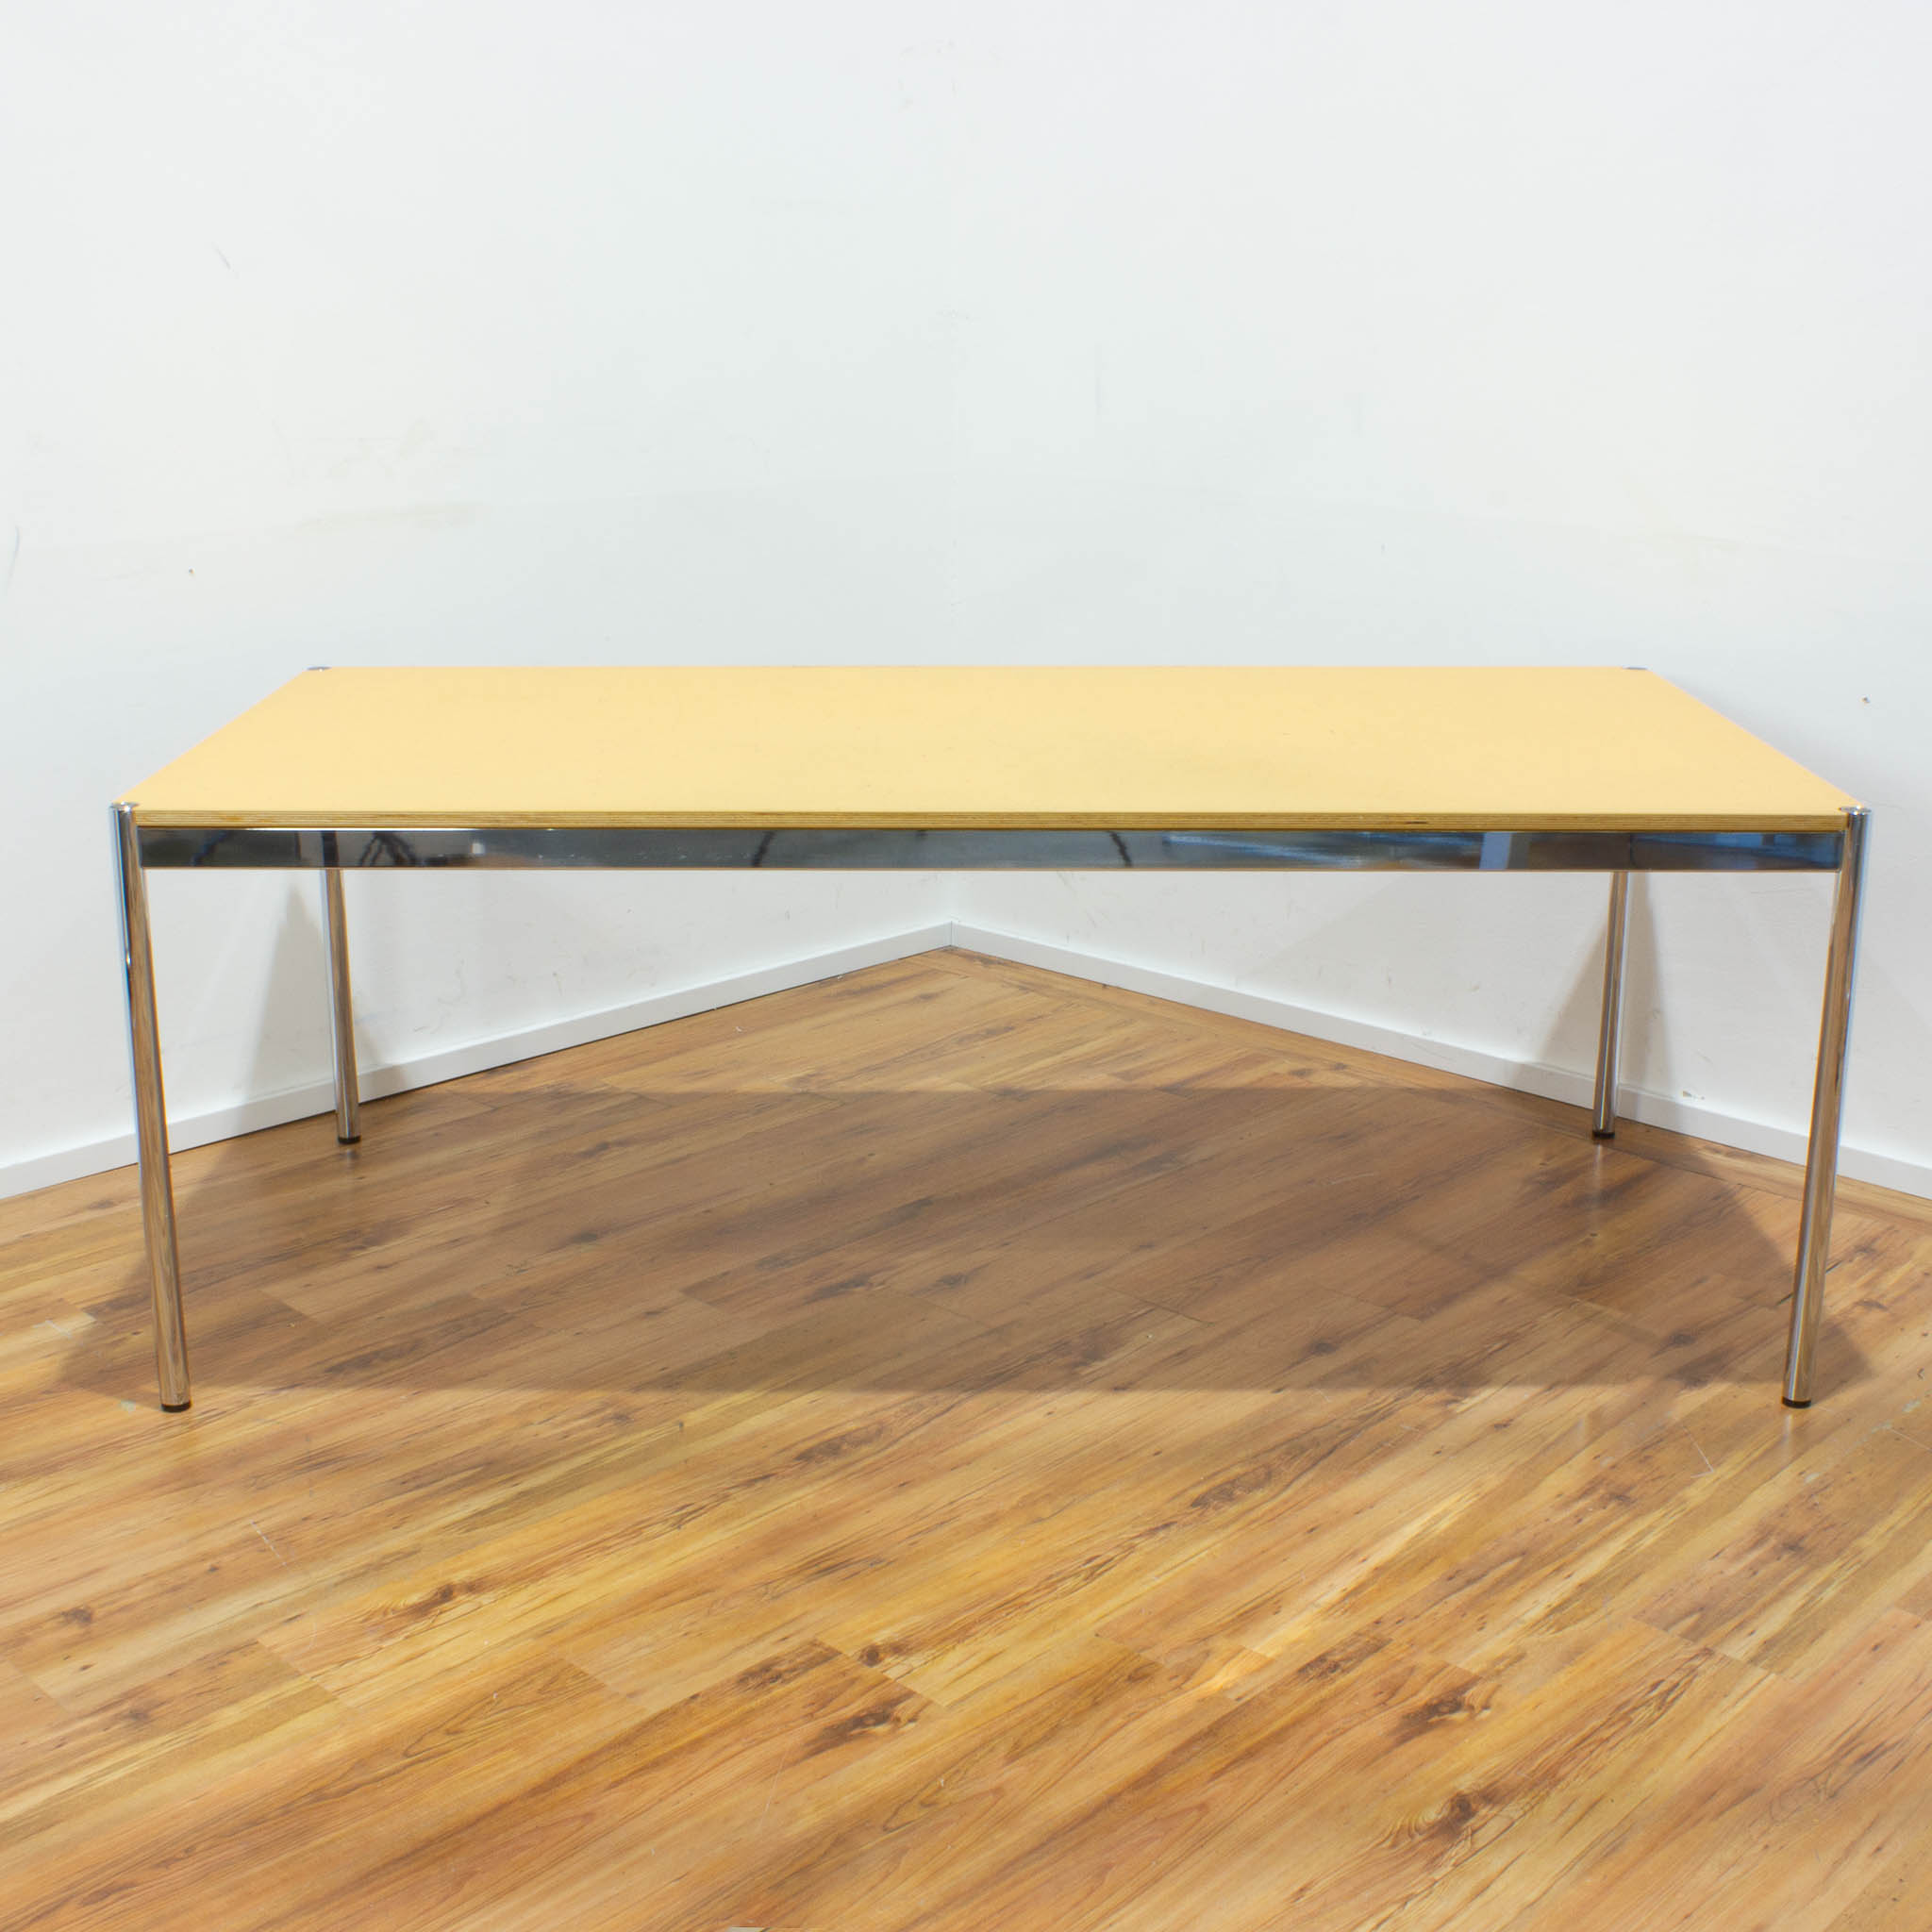 USM Haller Schreibtisch - Tischplatte Linoleum-Optik senf mit Holzkante - gebraucht - 200 x 100 cm 